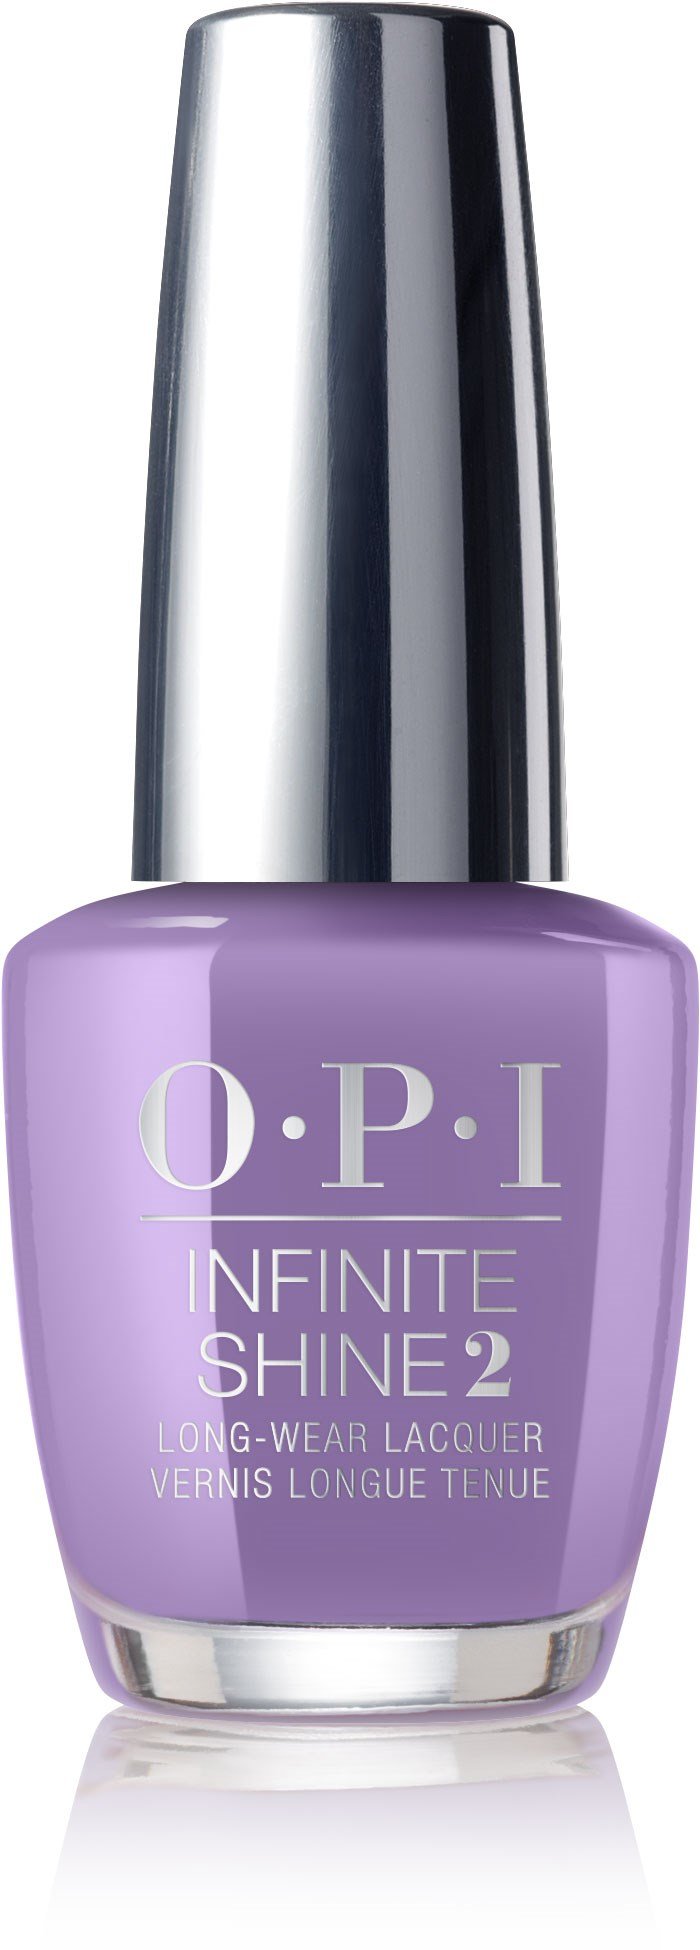 OPI Infinite Shine - ¿Lo tienes en color lila?